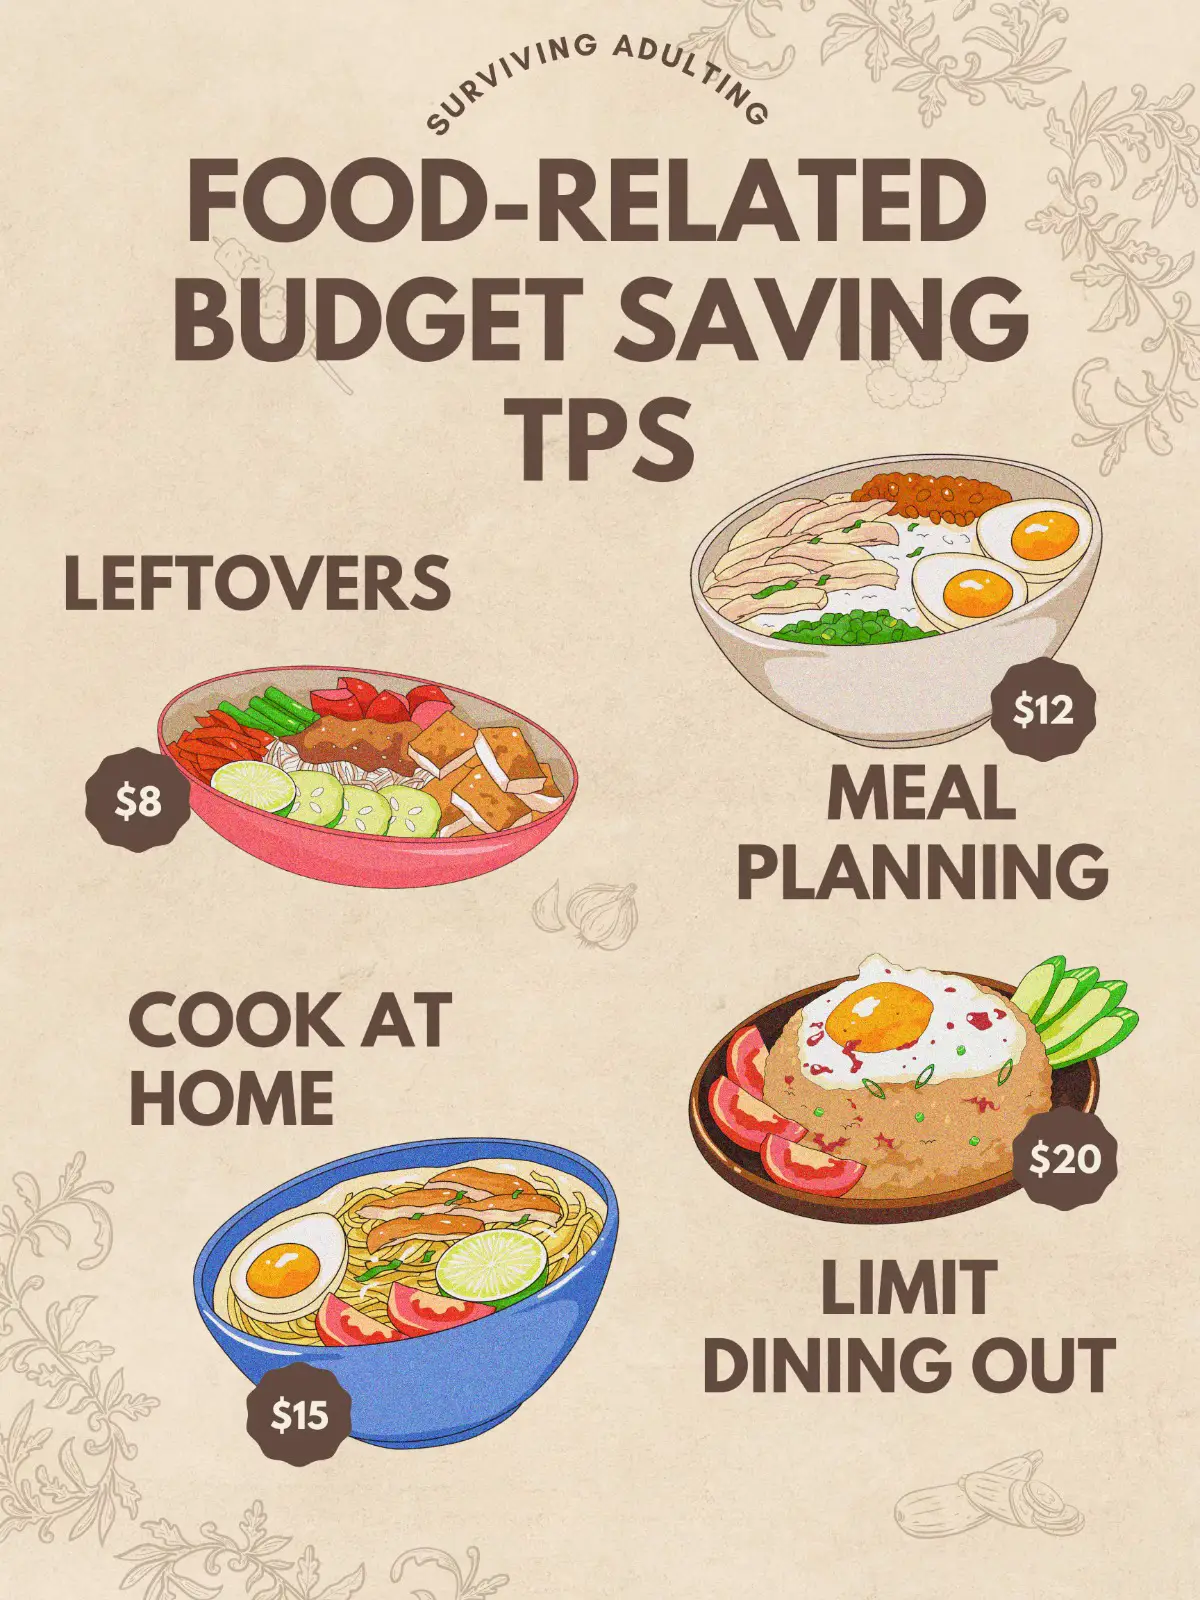 Budget-conscious restaurant savings